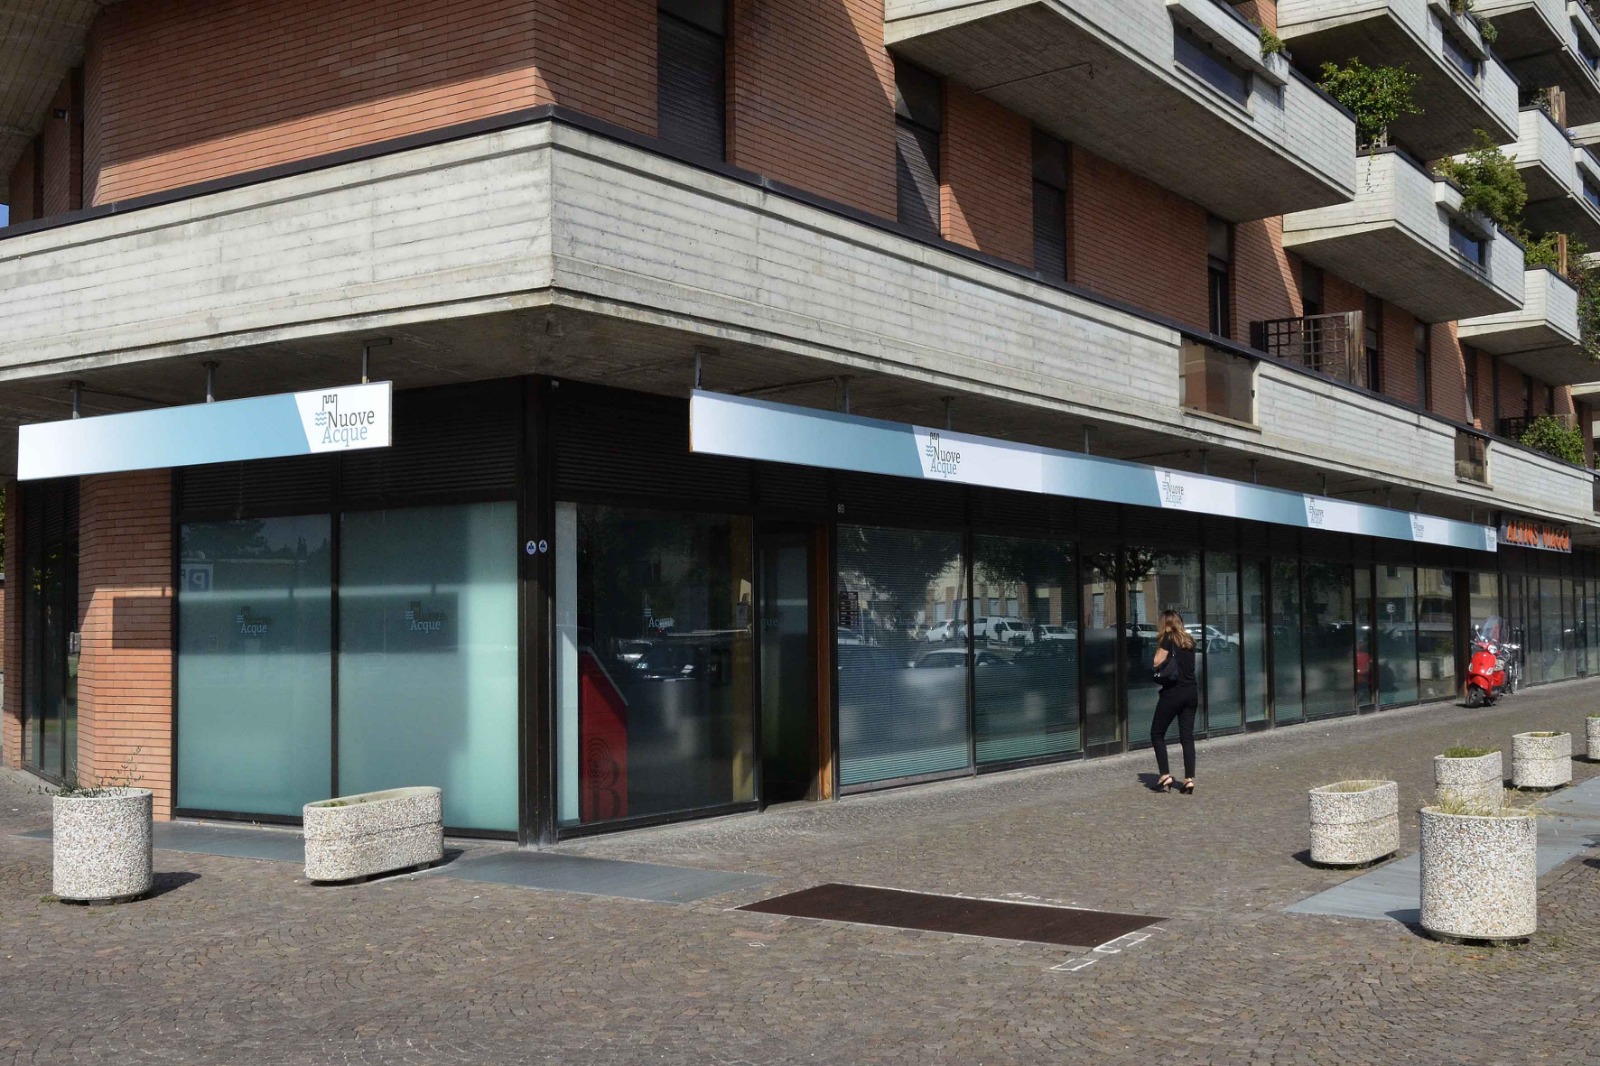 Nuove Acque: graduale riapertura degli uffici al pubblico su Arezzo e Sinalunga